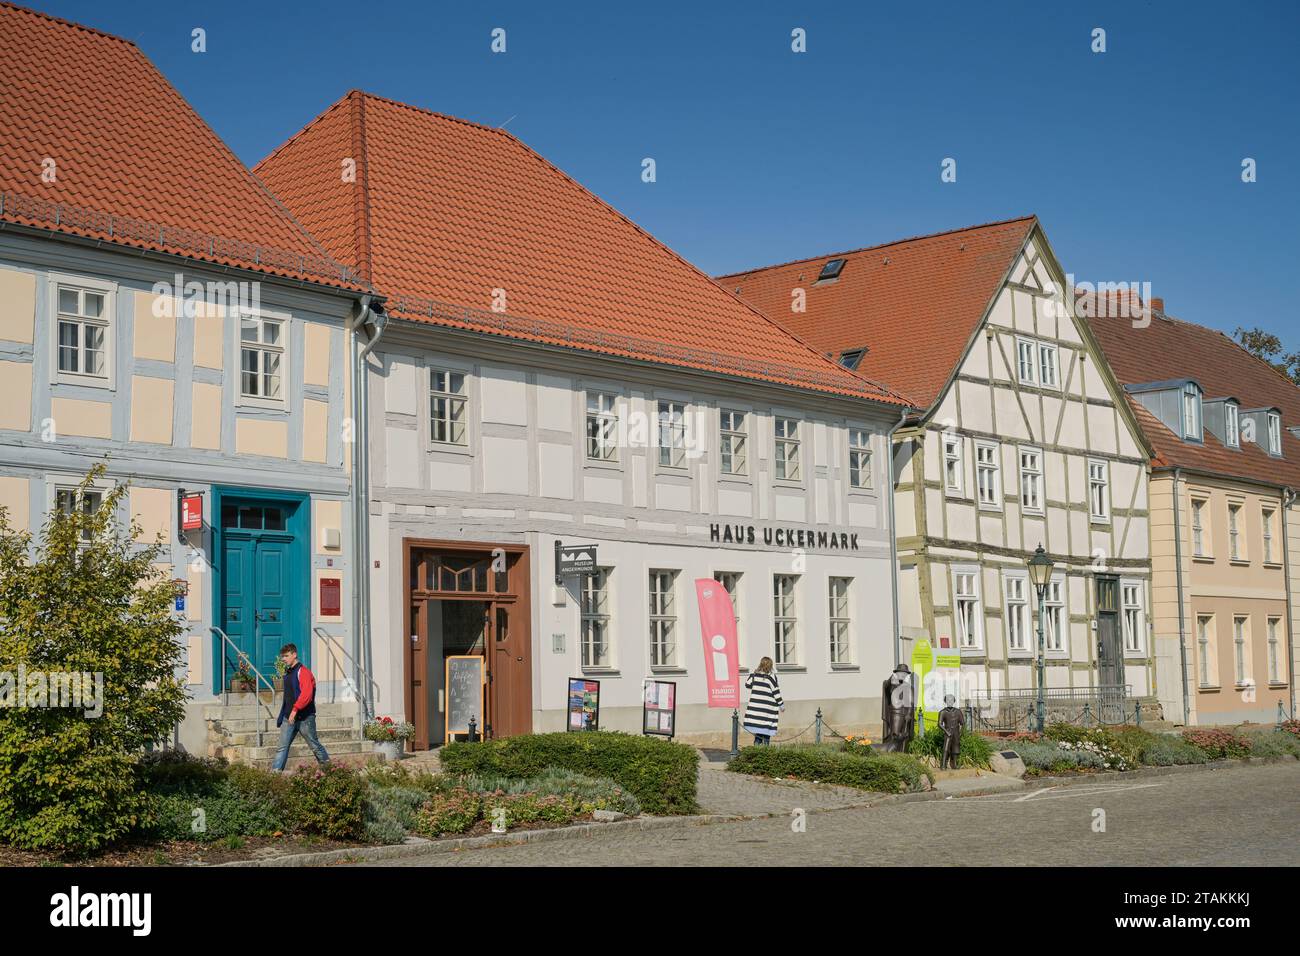 Straßenszene, Altbauten, Haus Uckermark, Hoher Steinweg, Altstadt, Angermünde, Brandenburg, Deutschland Banque D'Images